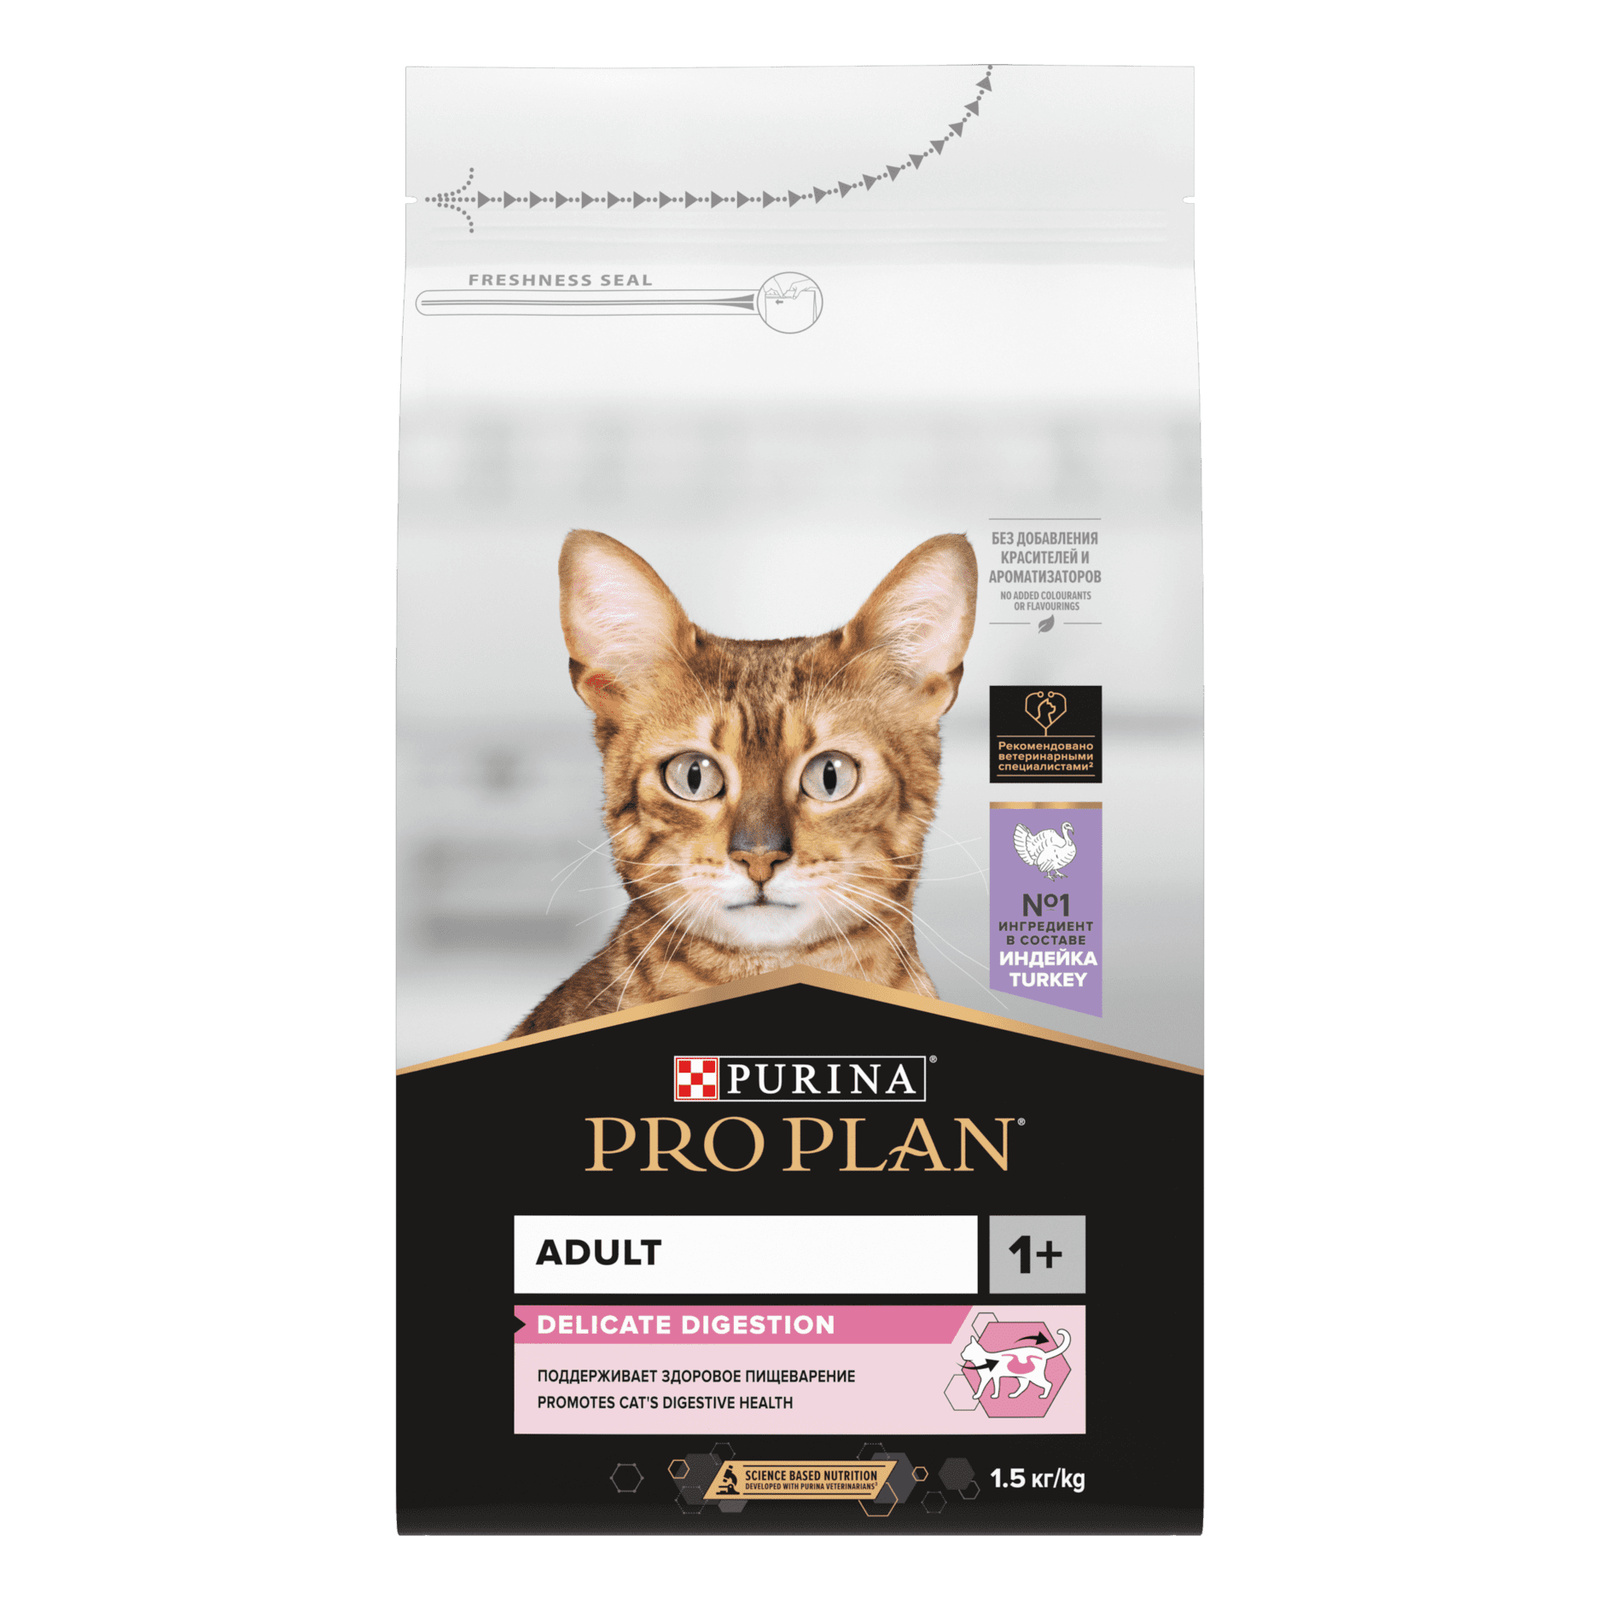 Корм Purina Pro Plan для взрослых кошек с чувствительным пищеварением или особыми предпочтениями в еде, с высоким содержанием индейки (10 кг)